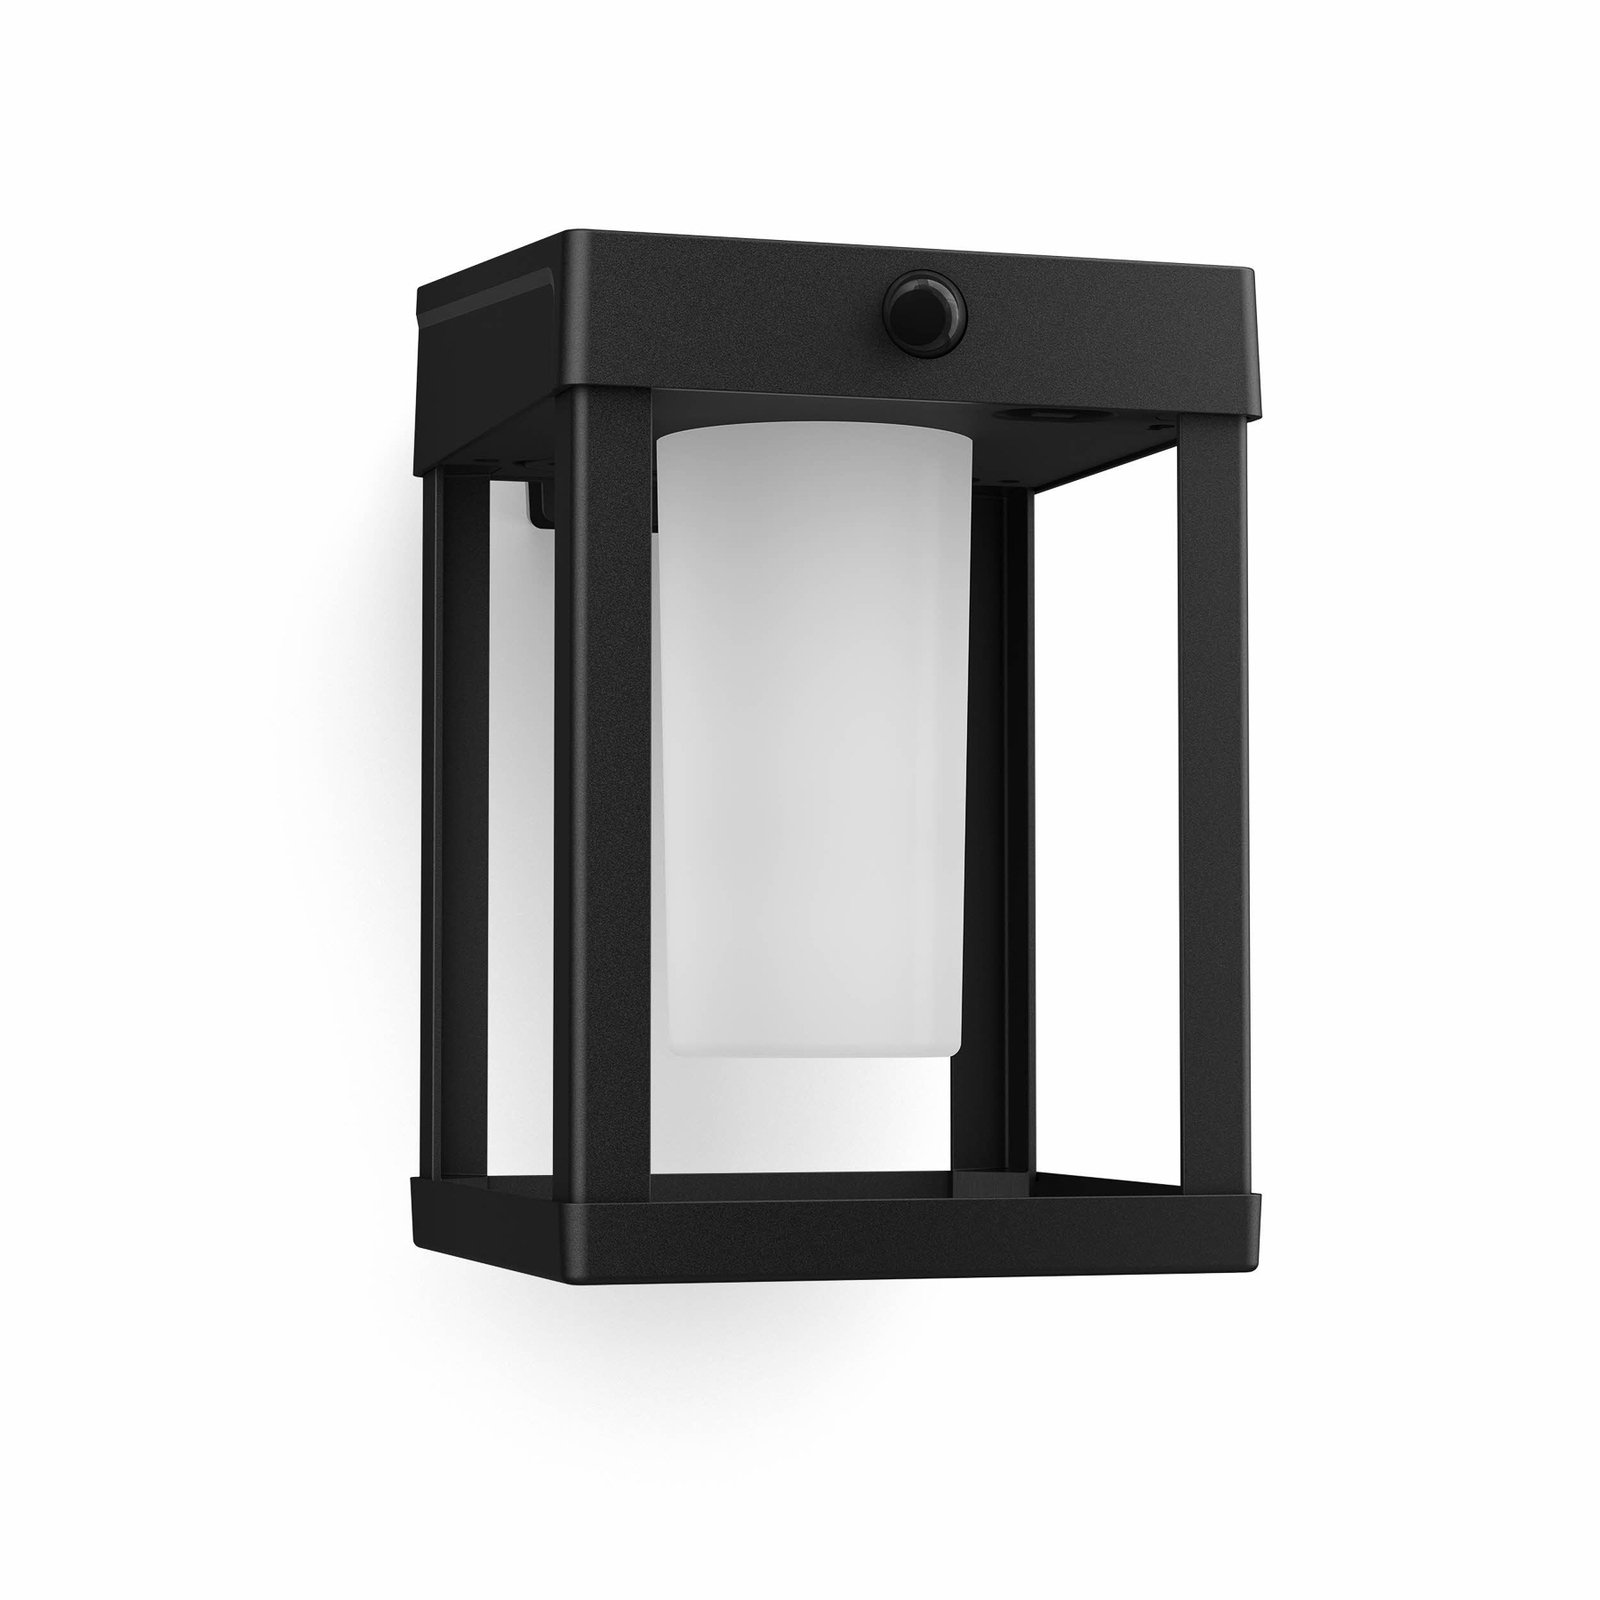 Solárne nástenné svietidlo Philips LED Camill, čierna/biela, 14 x 14 cm